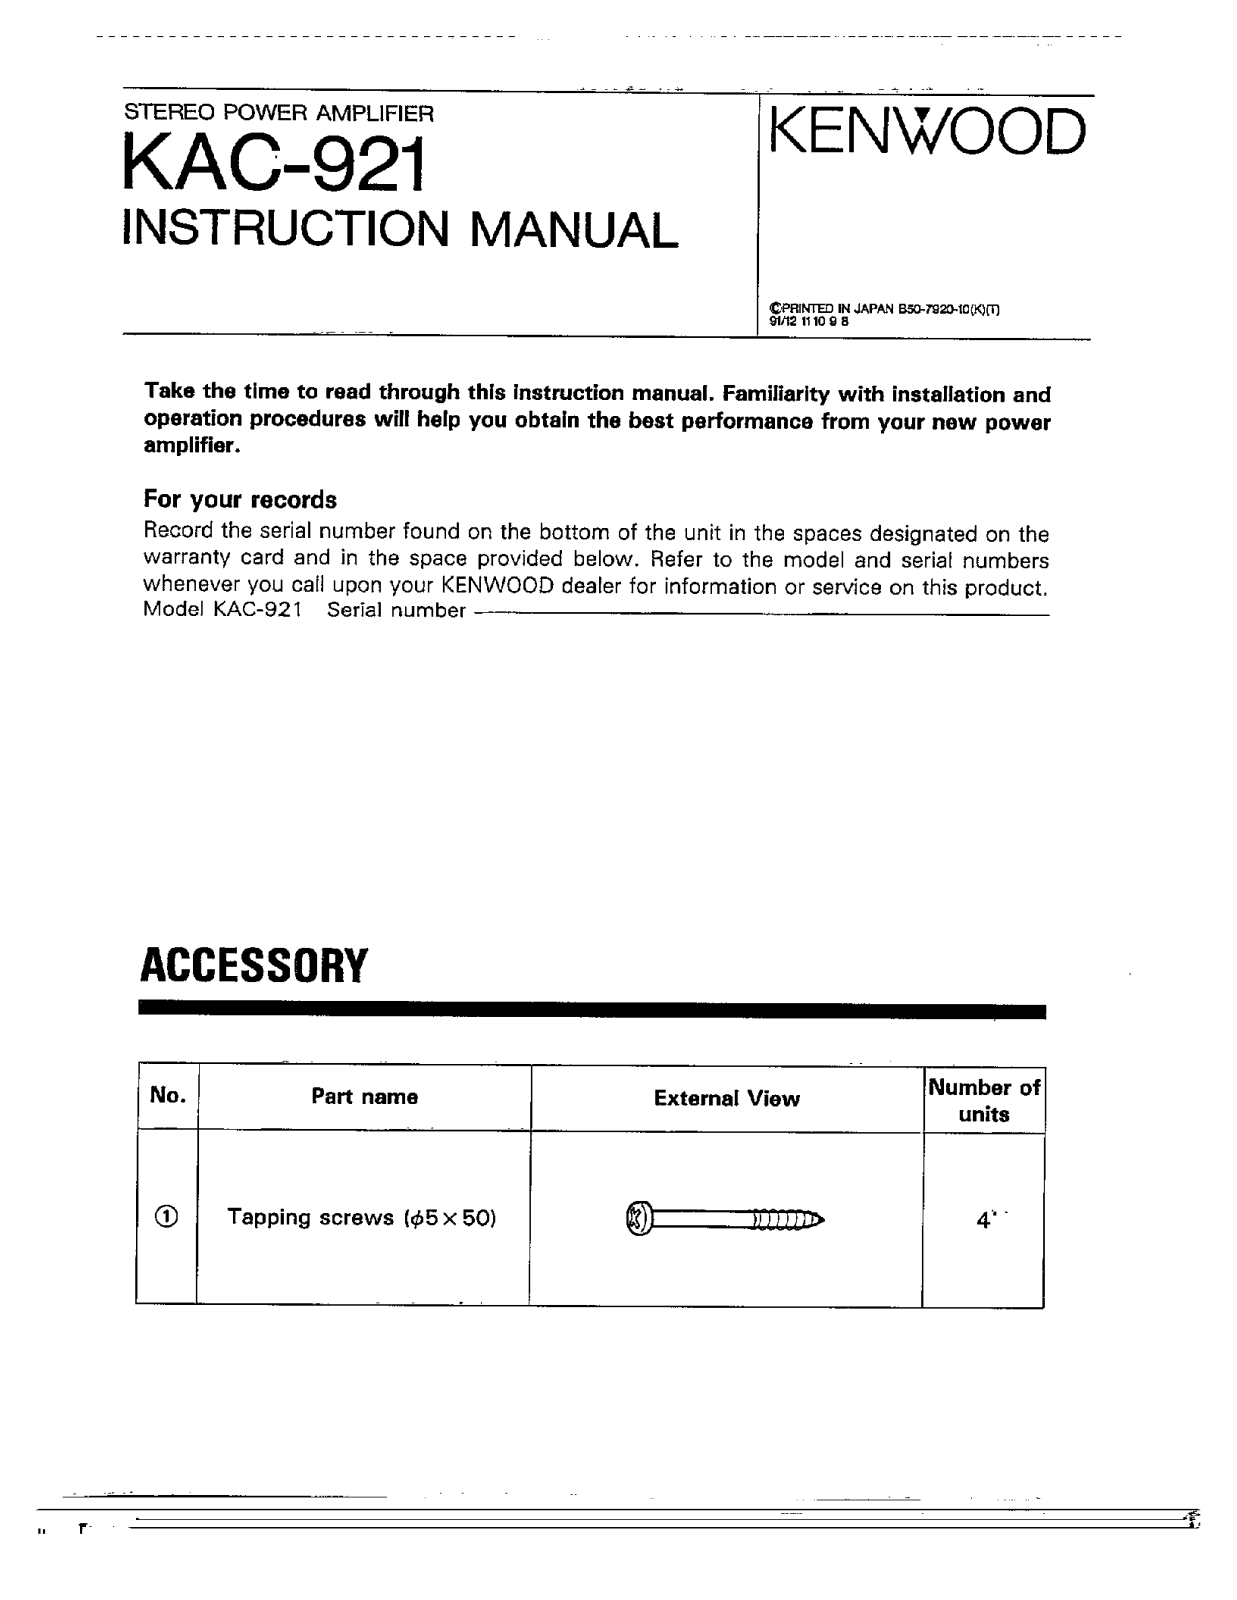 Kenwood KAC-921 Owner's Manual